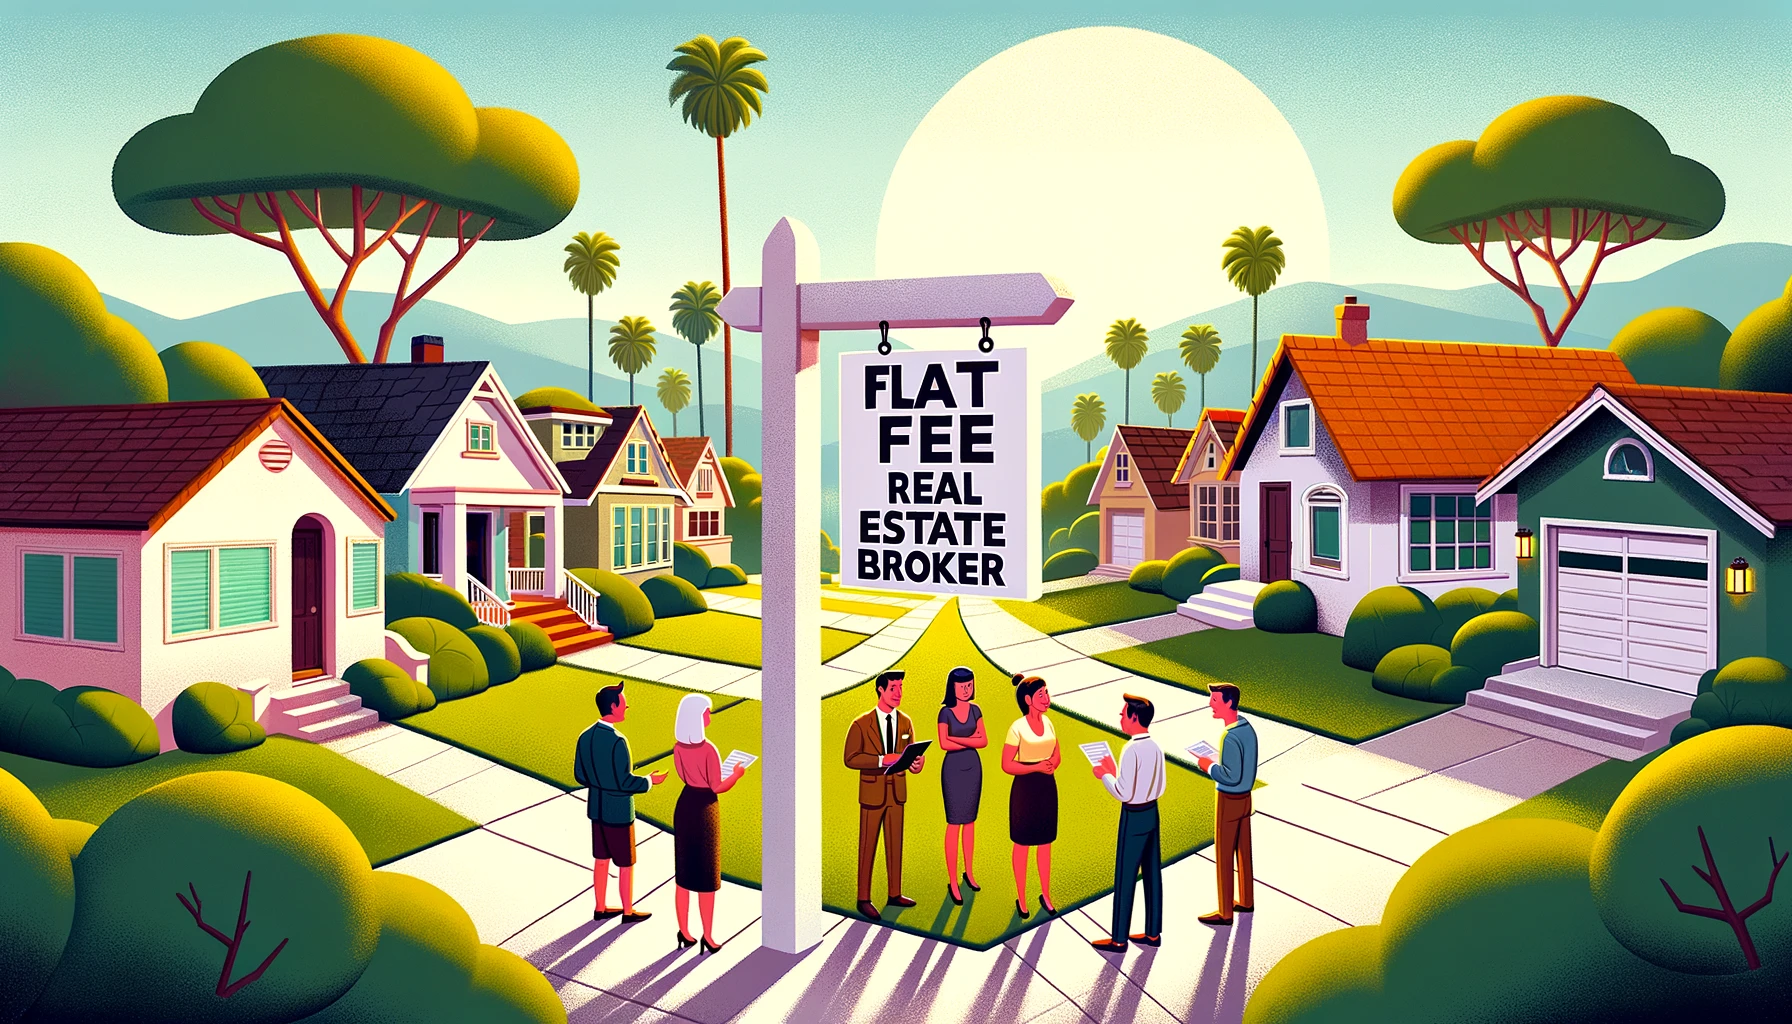 Flat Fee Real Estate Broker in California